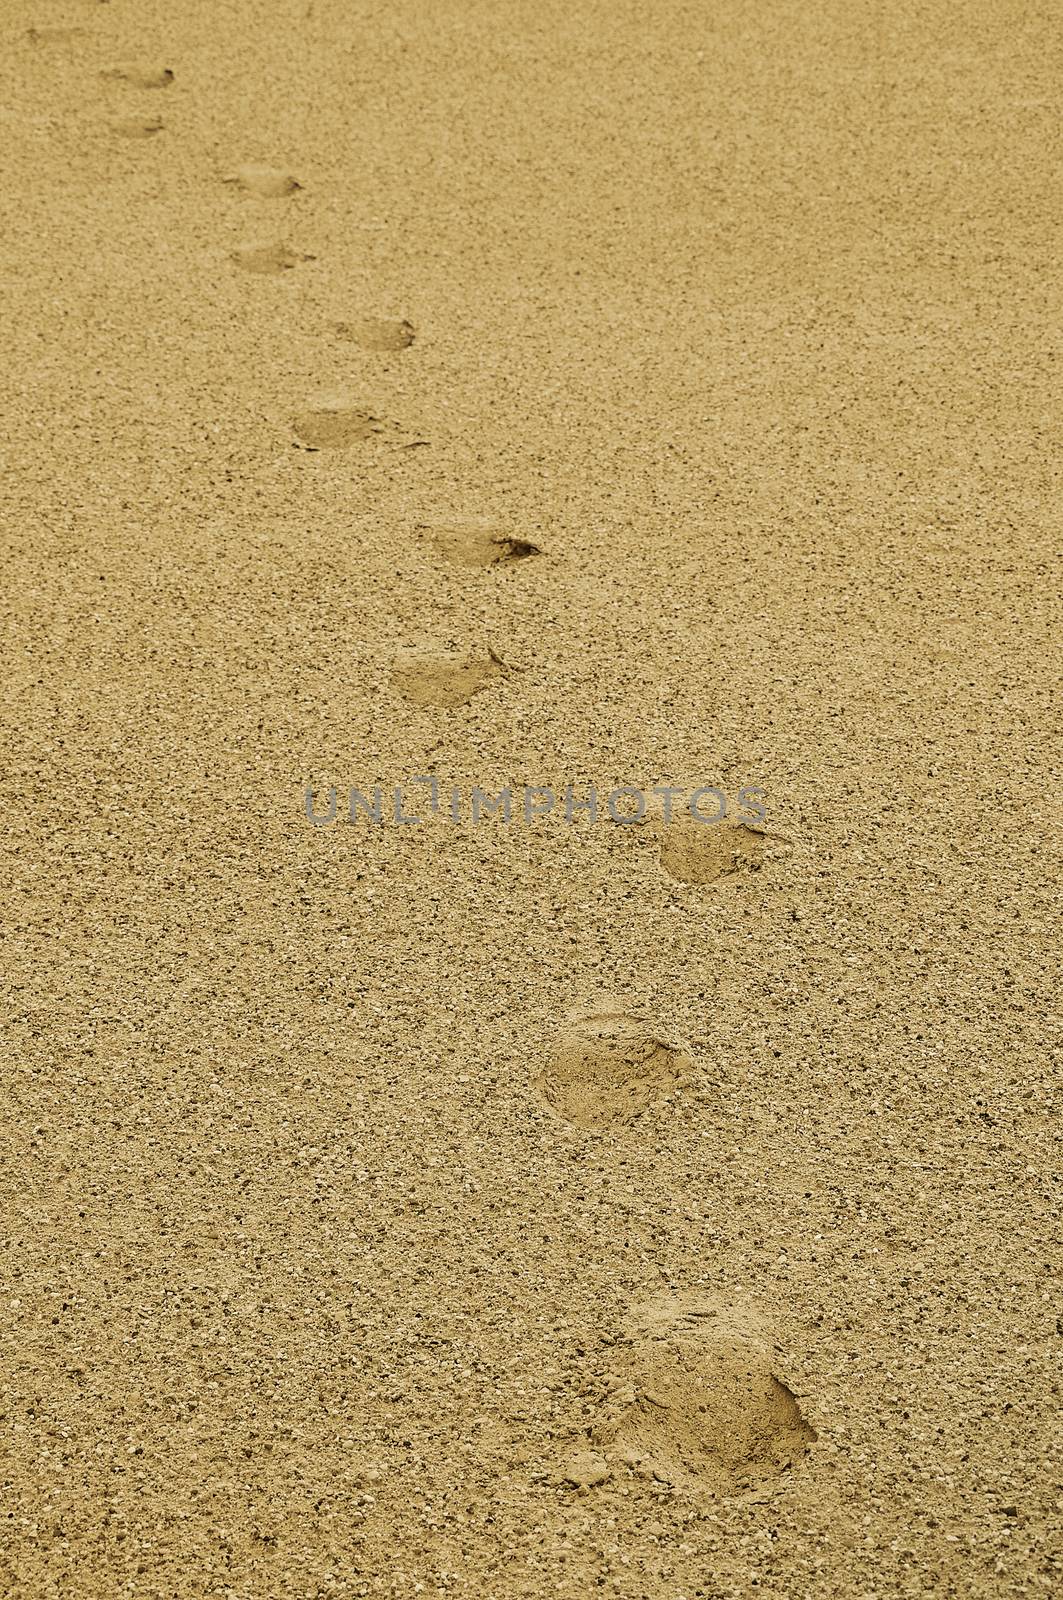 top aerial view of footsteps footprints on sand dunes in desert